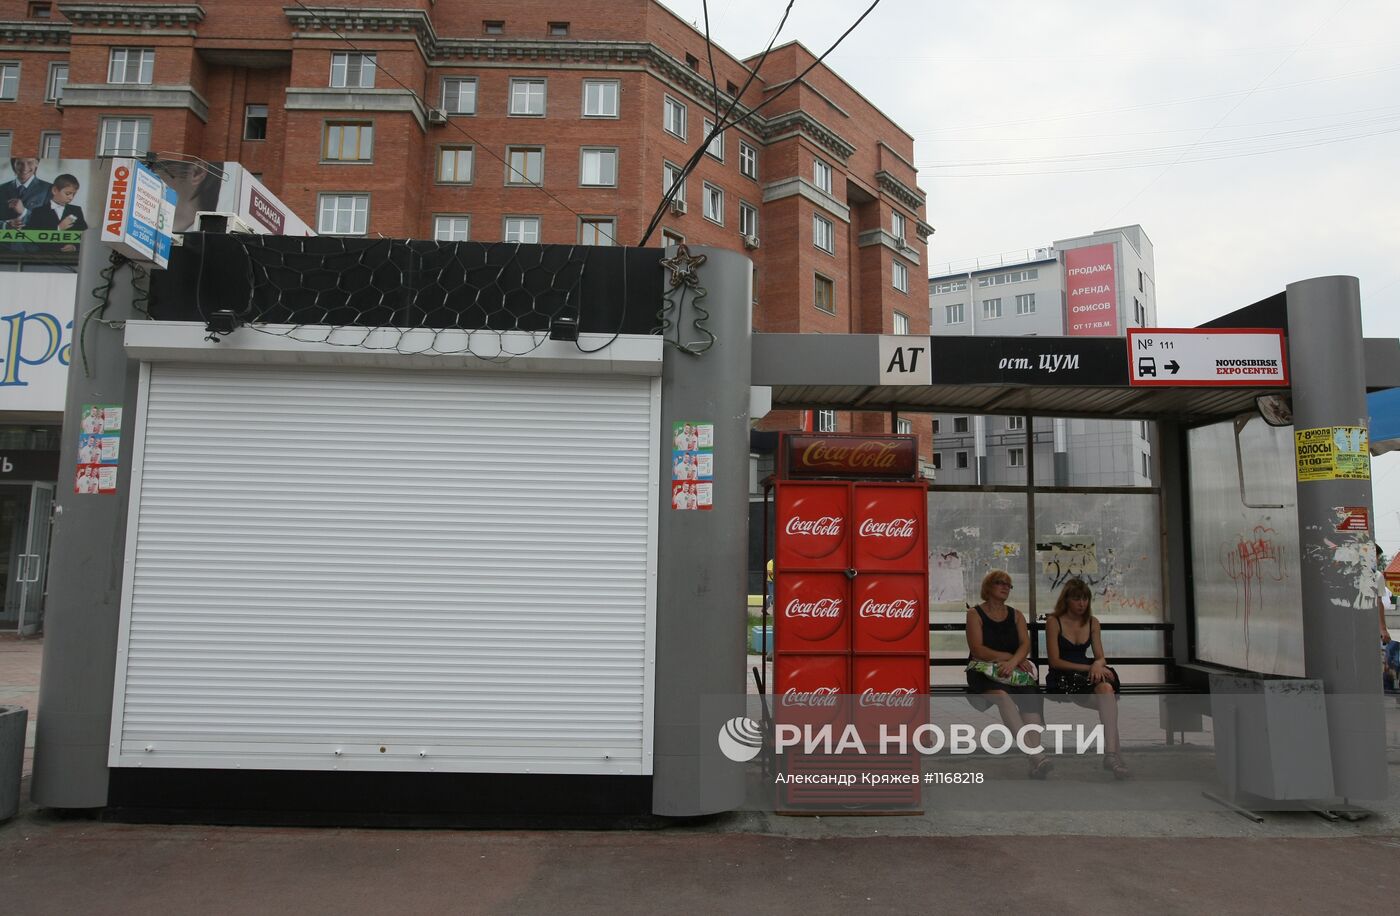 Продажа слабоалкогольных напитков в Новосибирске